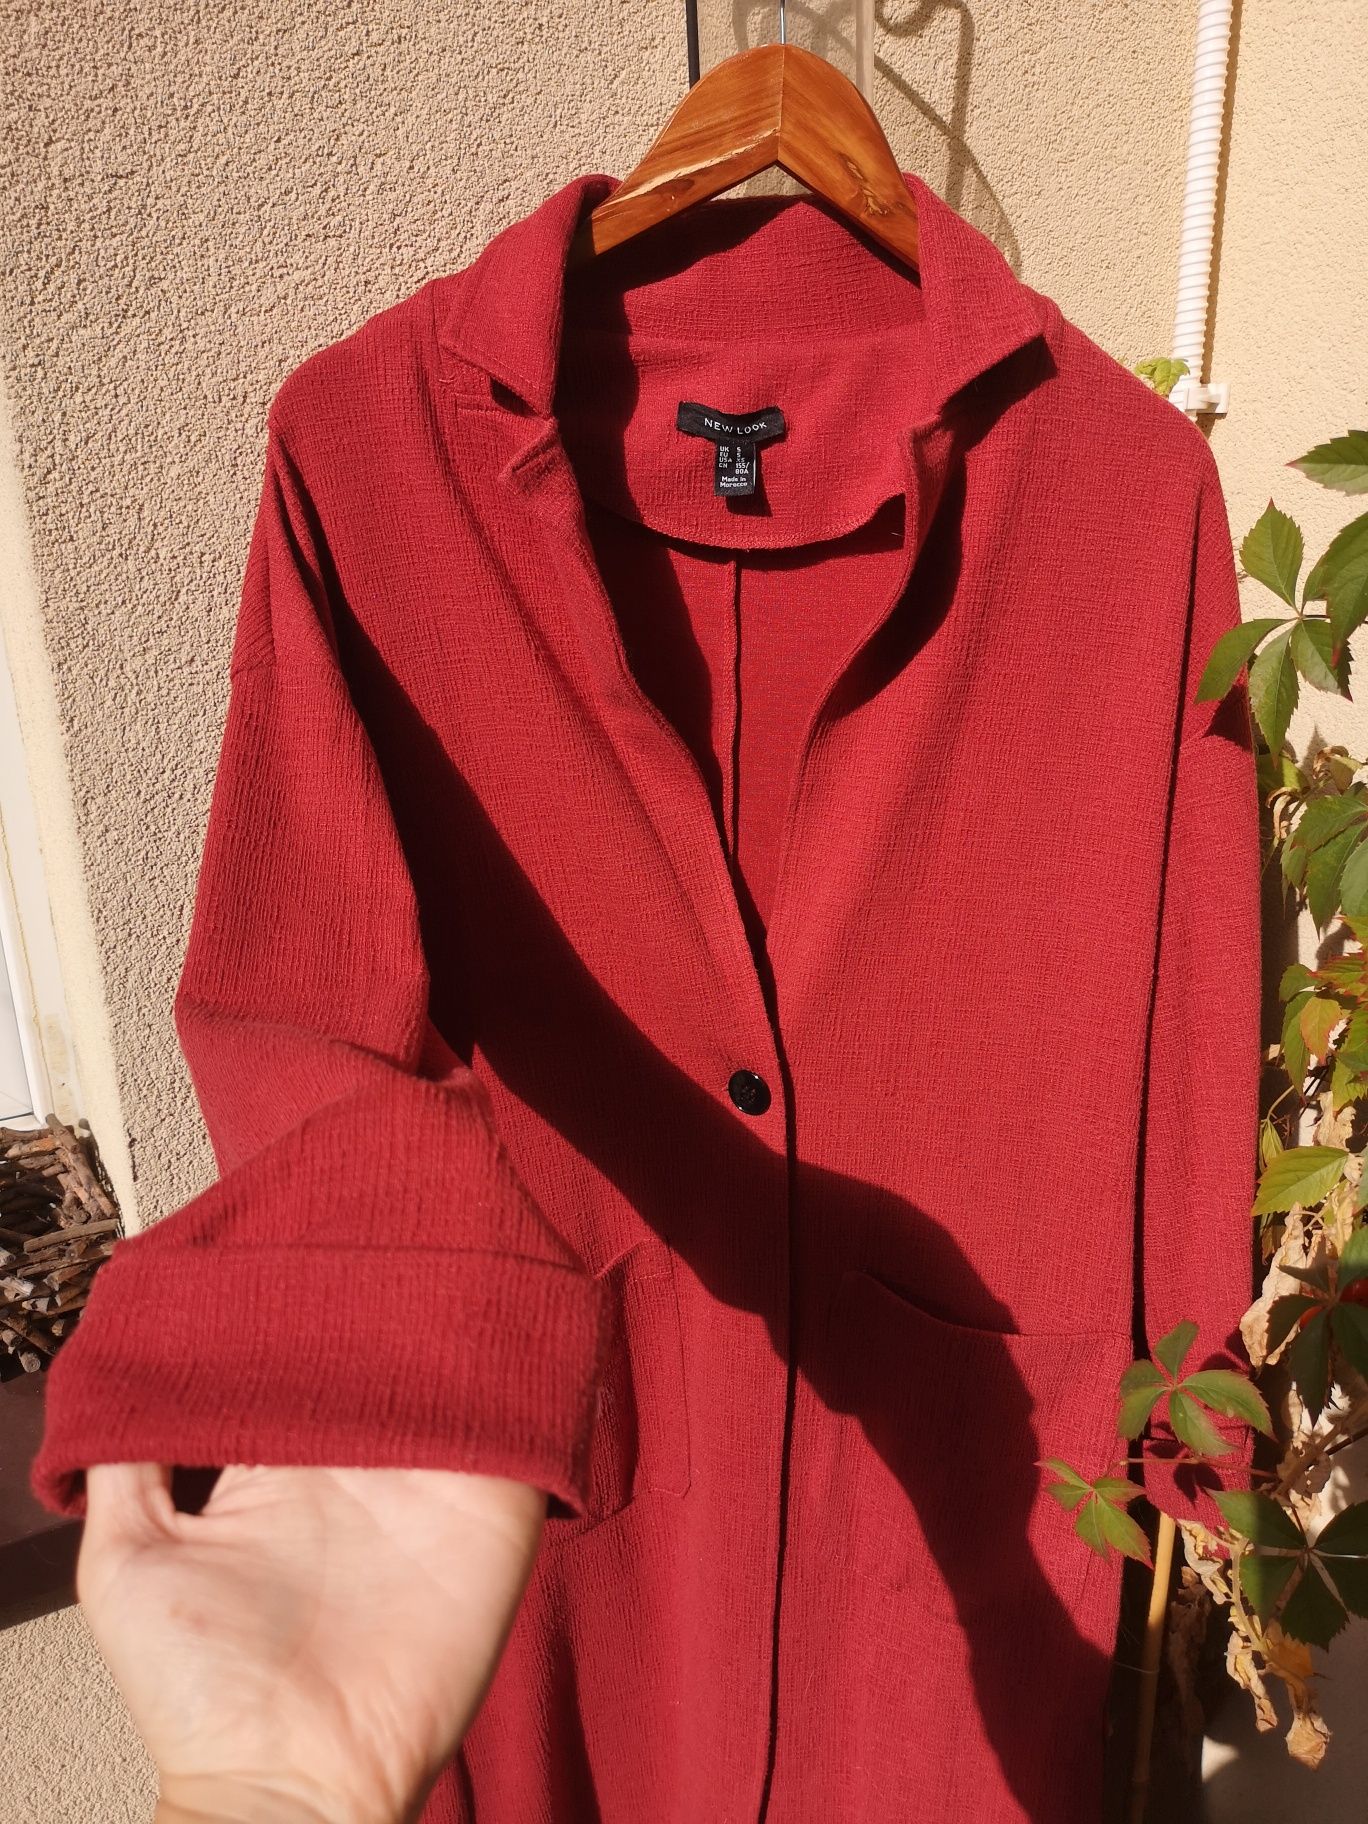 Płaszcz jesienny New Look rozmiar S kolor ceglany czerwony